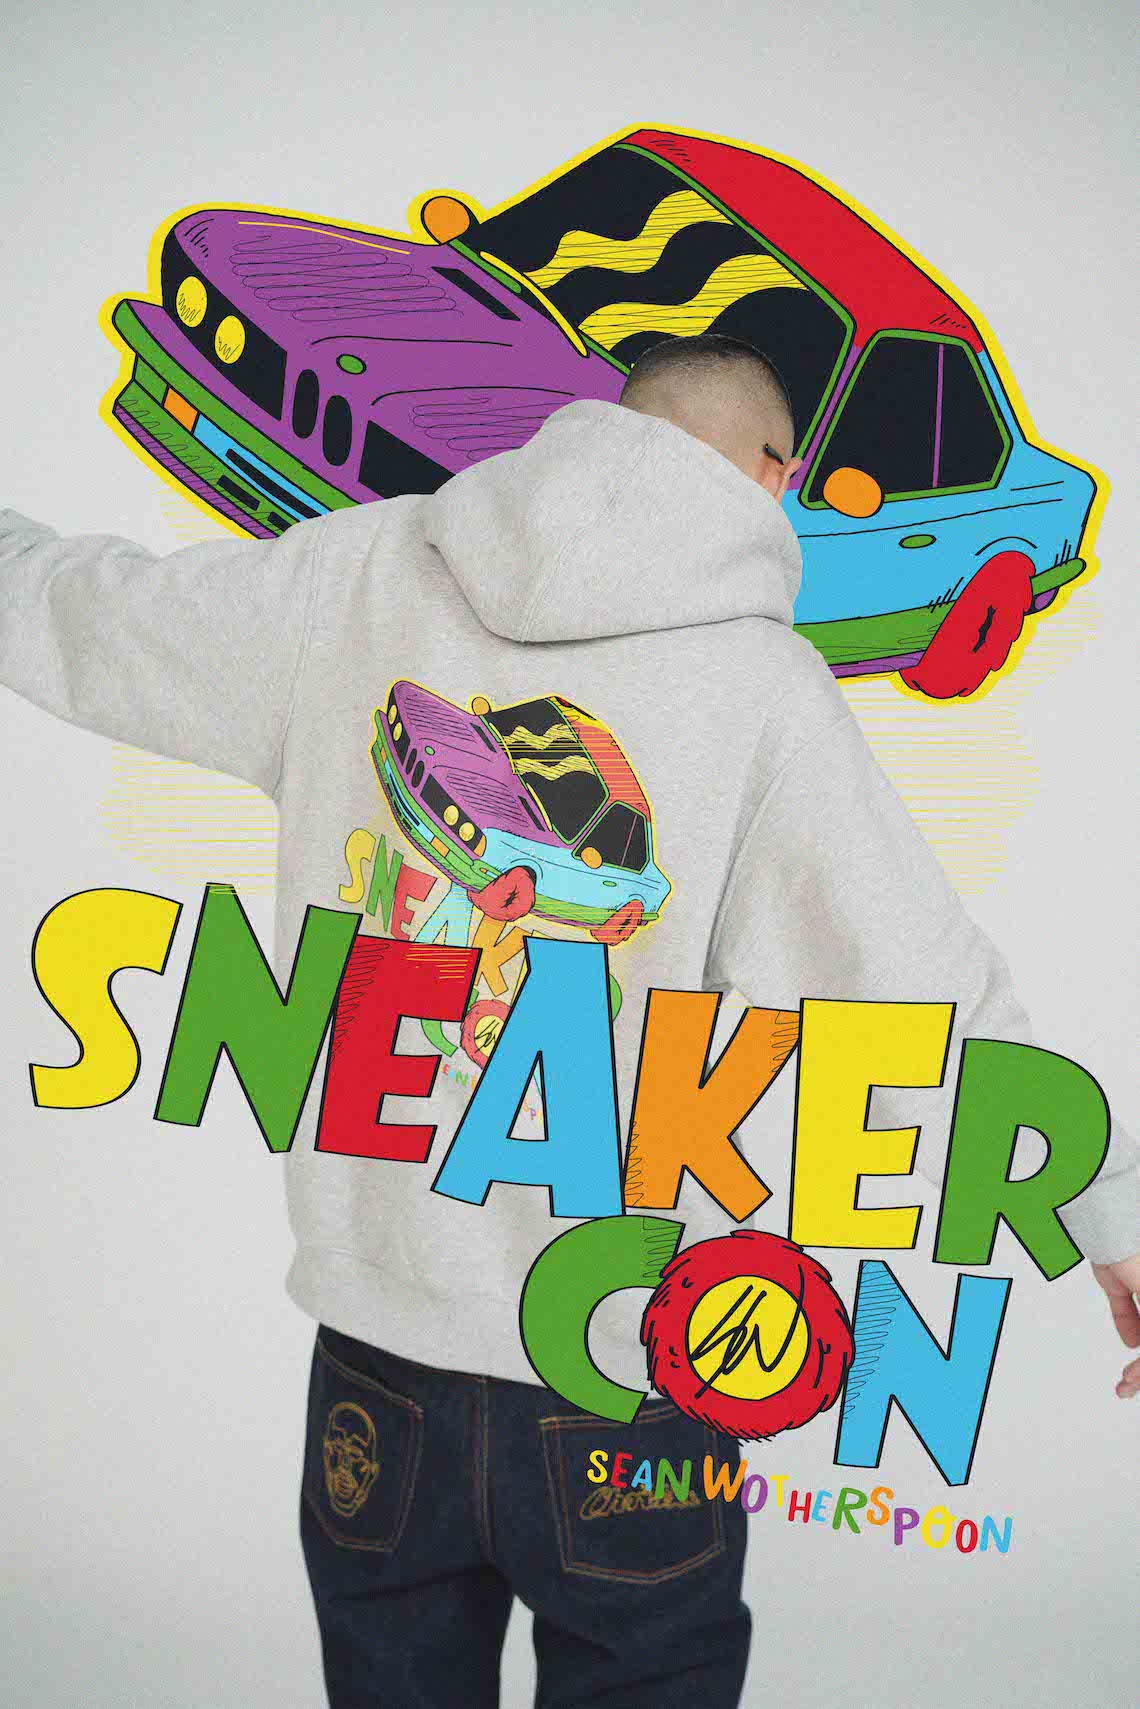 Sneaker Con Shanghai 2020 19